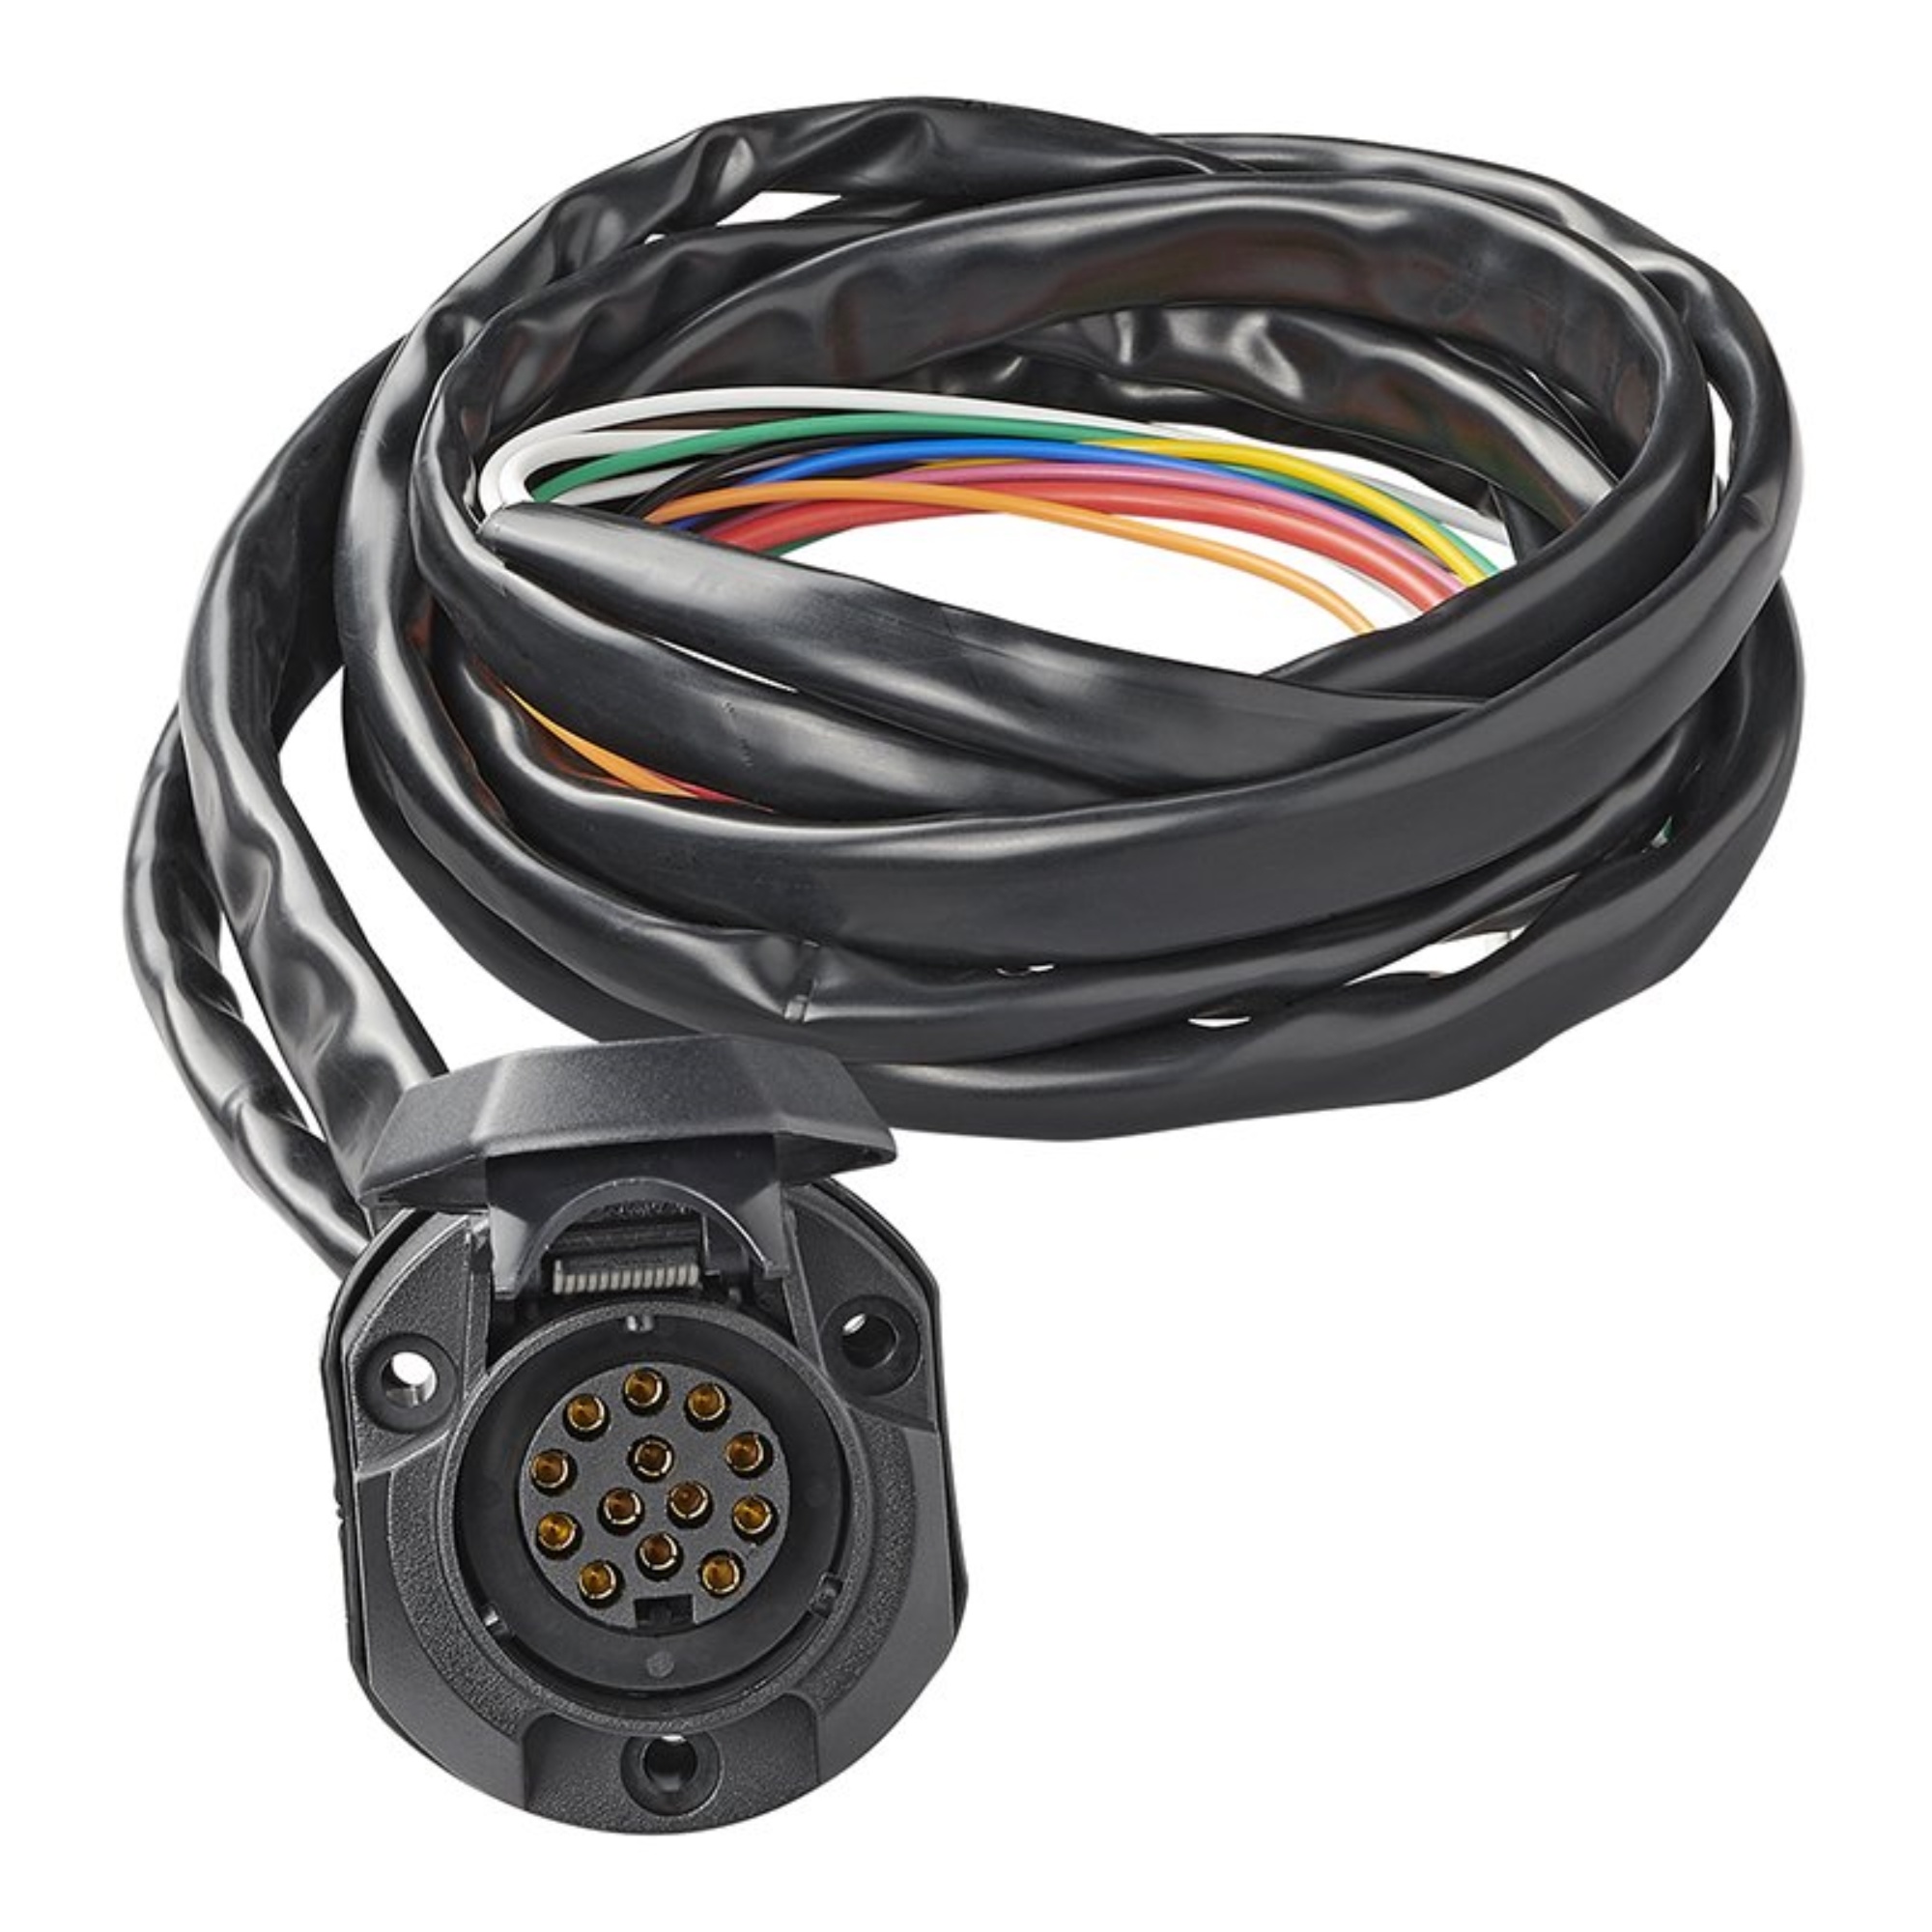 Aanpassen Afwijken soep Pro Plus Trekhaakkabelset 13-polig PVC Jaeger + 1,50M kabel kopen? - 2Cheap